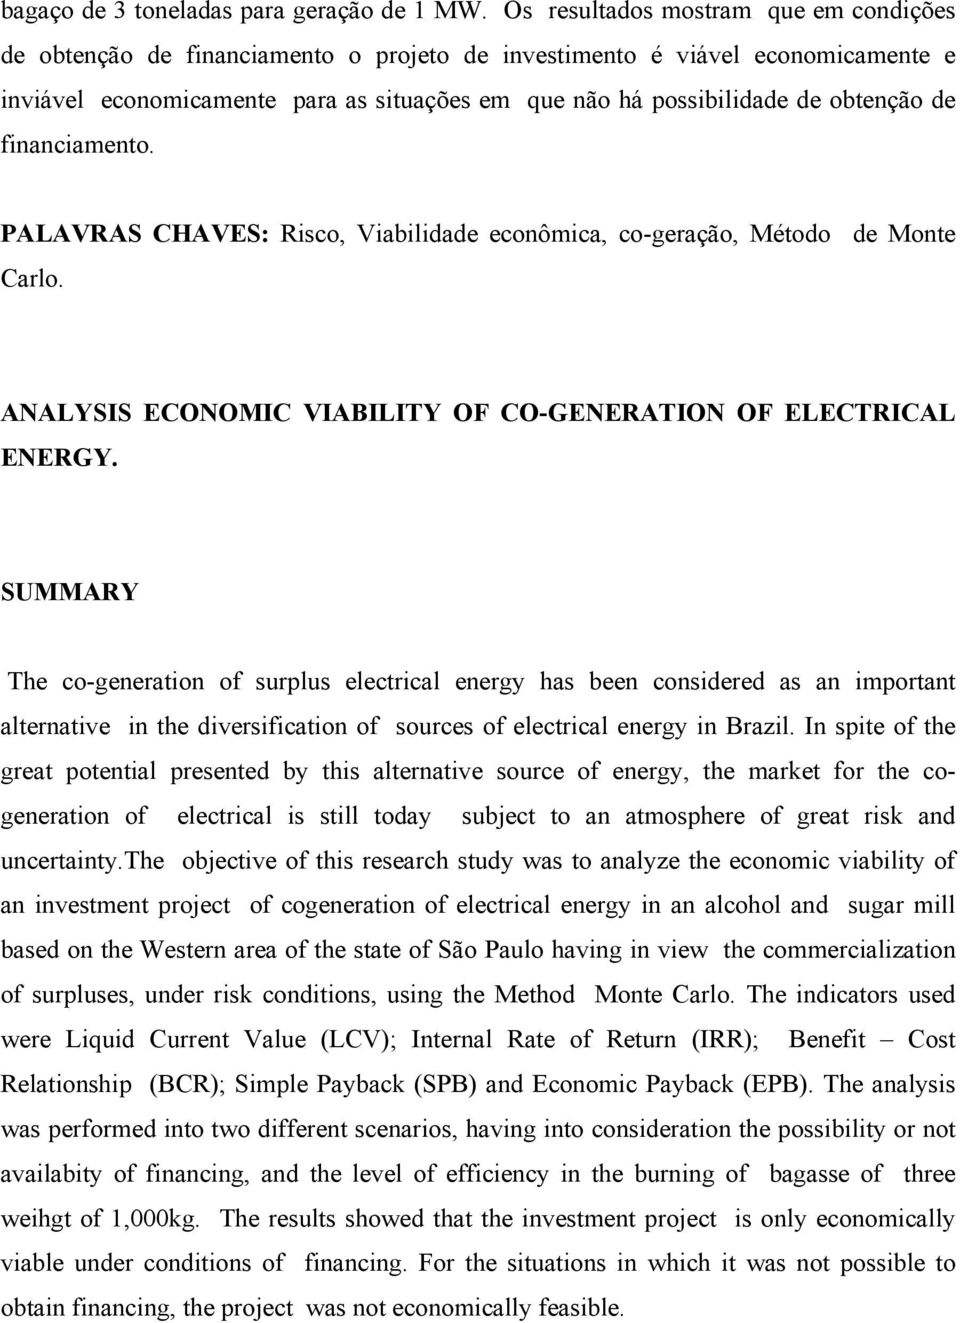 obtenção de financiamento. PALAVRAS CHAVES: Risco, Viabilidade econômica, co-geração, Método de Monte Carlo. ANALYSIS ECONOMIC VIABILITY OF CO-GENERATION OF ELECTRICAL ENERGY.